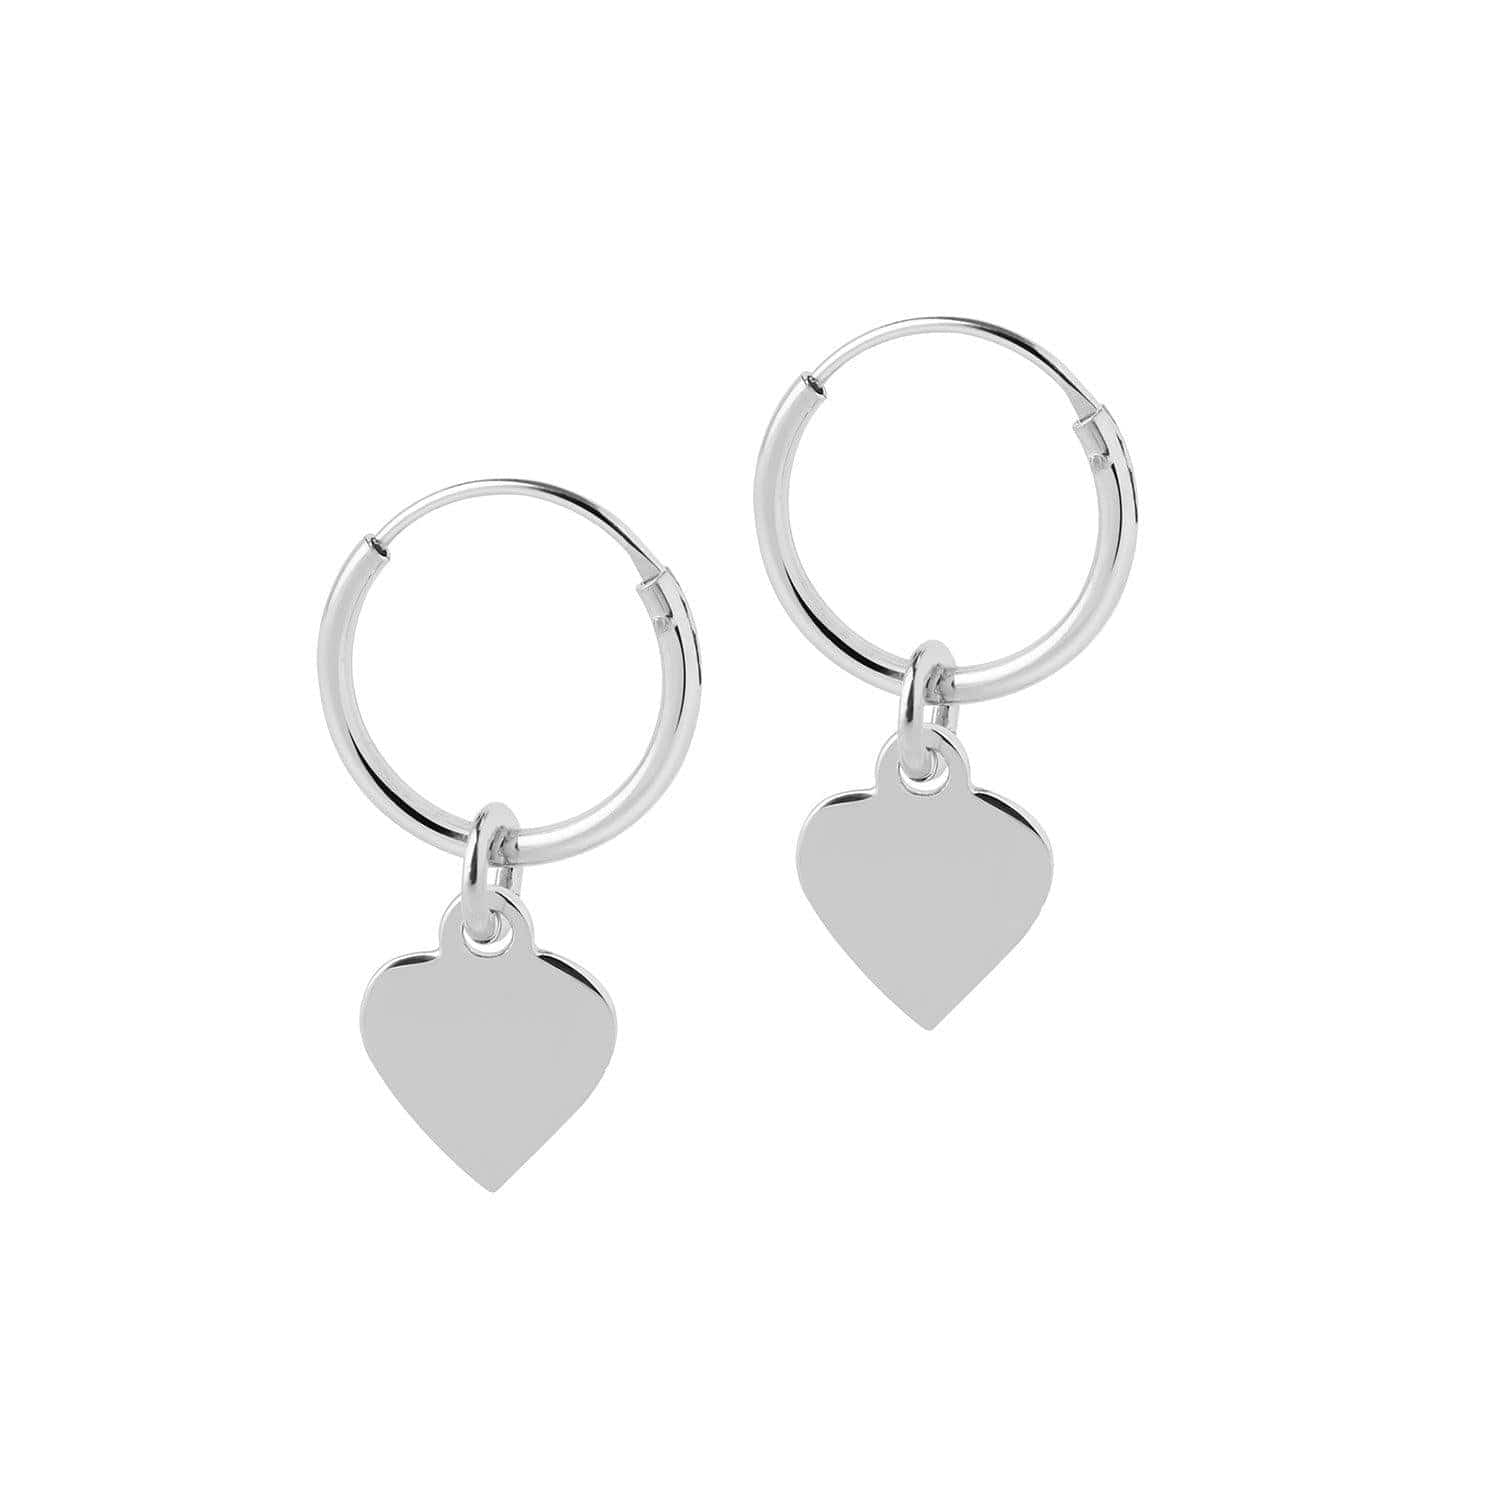 Silver Hoop Earrings with Heart 12 MM